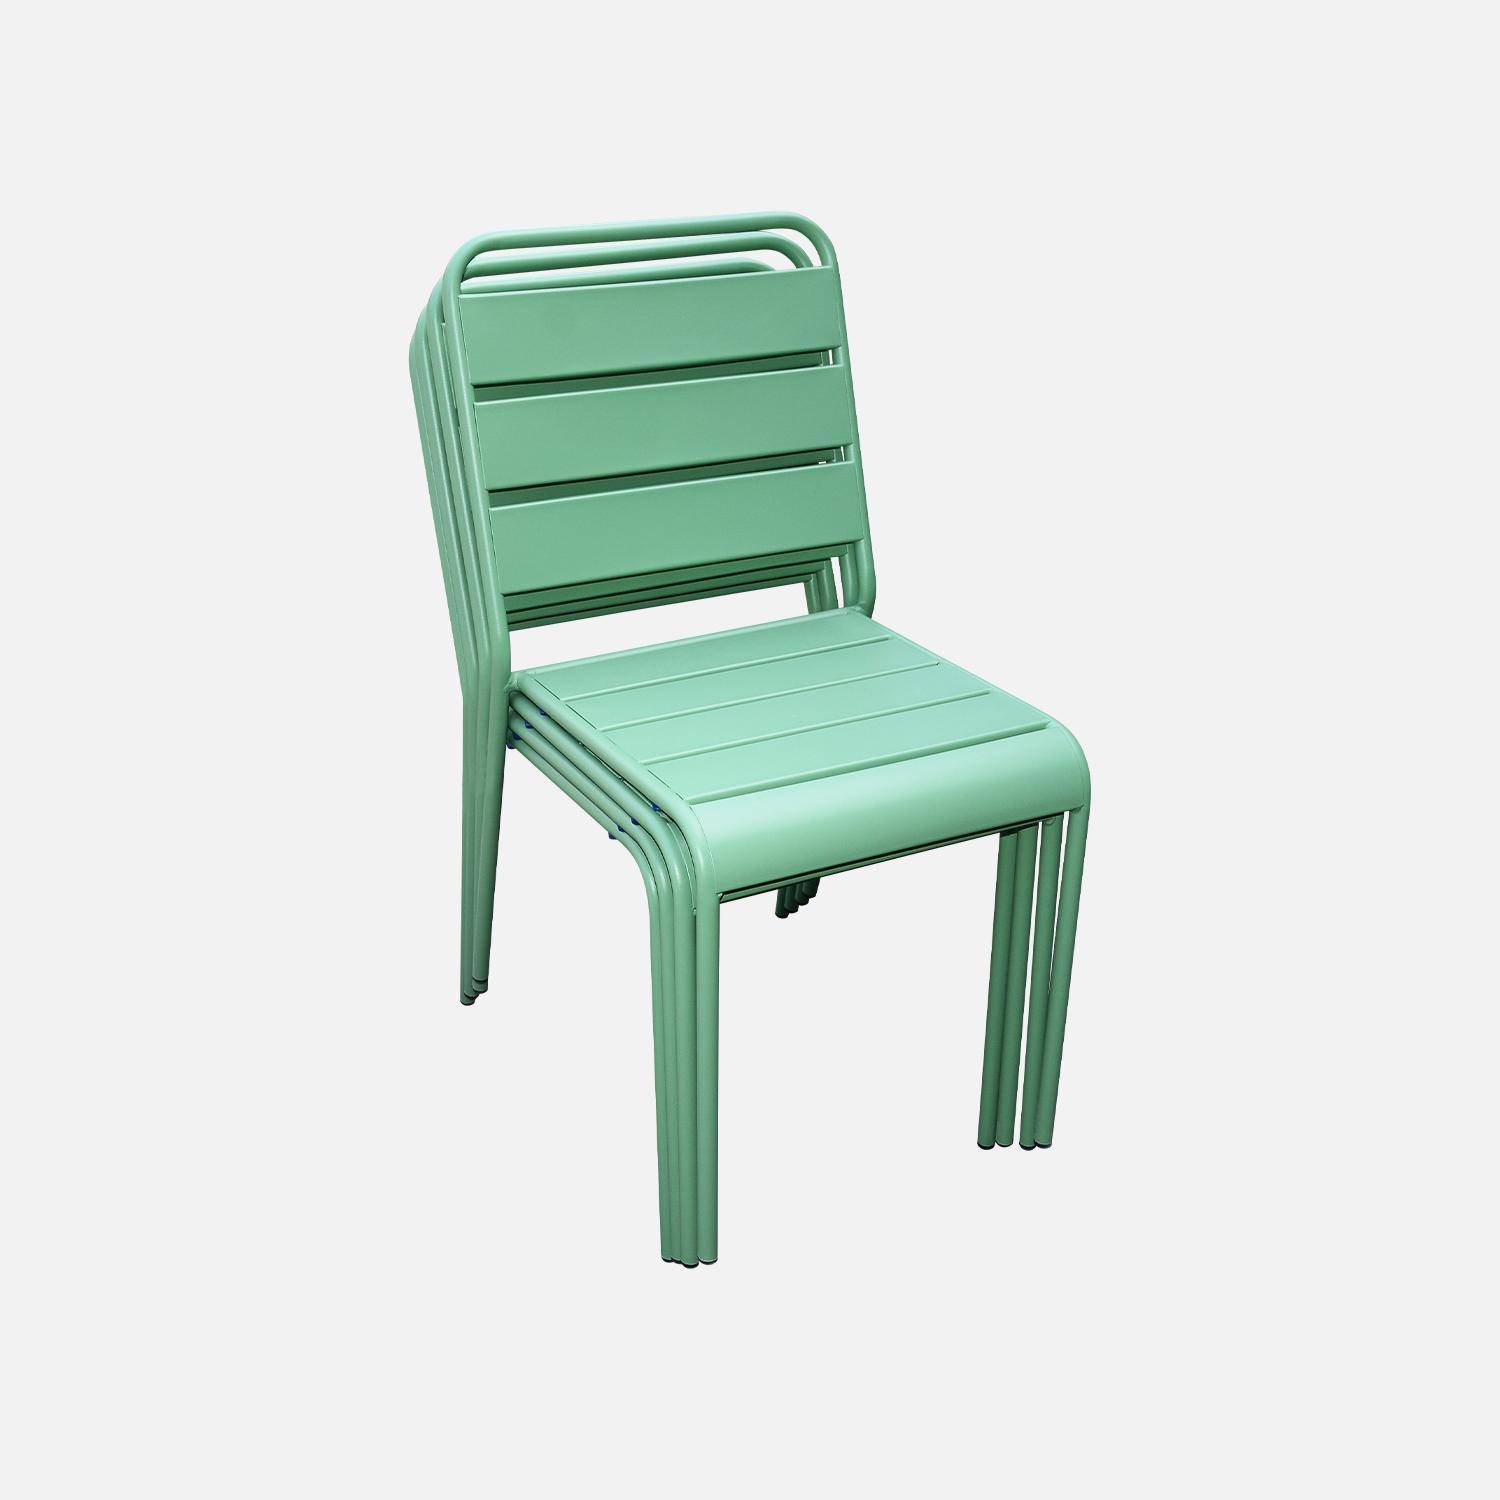 Lot de 4 chaises intérieur / extérieur en métal peinture antirouille empilables coloris vert jade,sweeek,Photo3